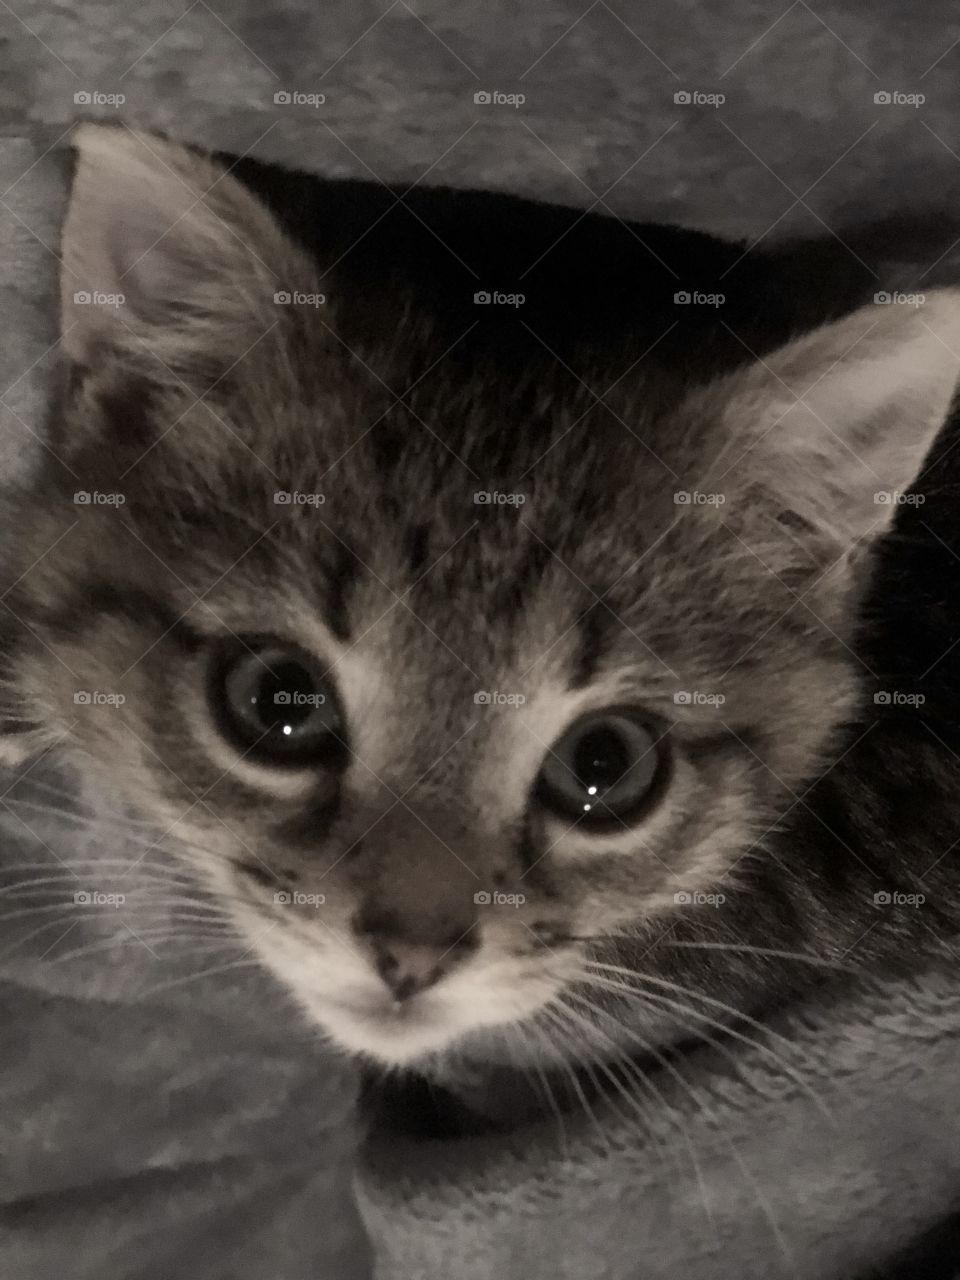 Kitten eyes